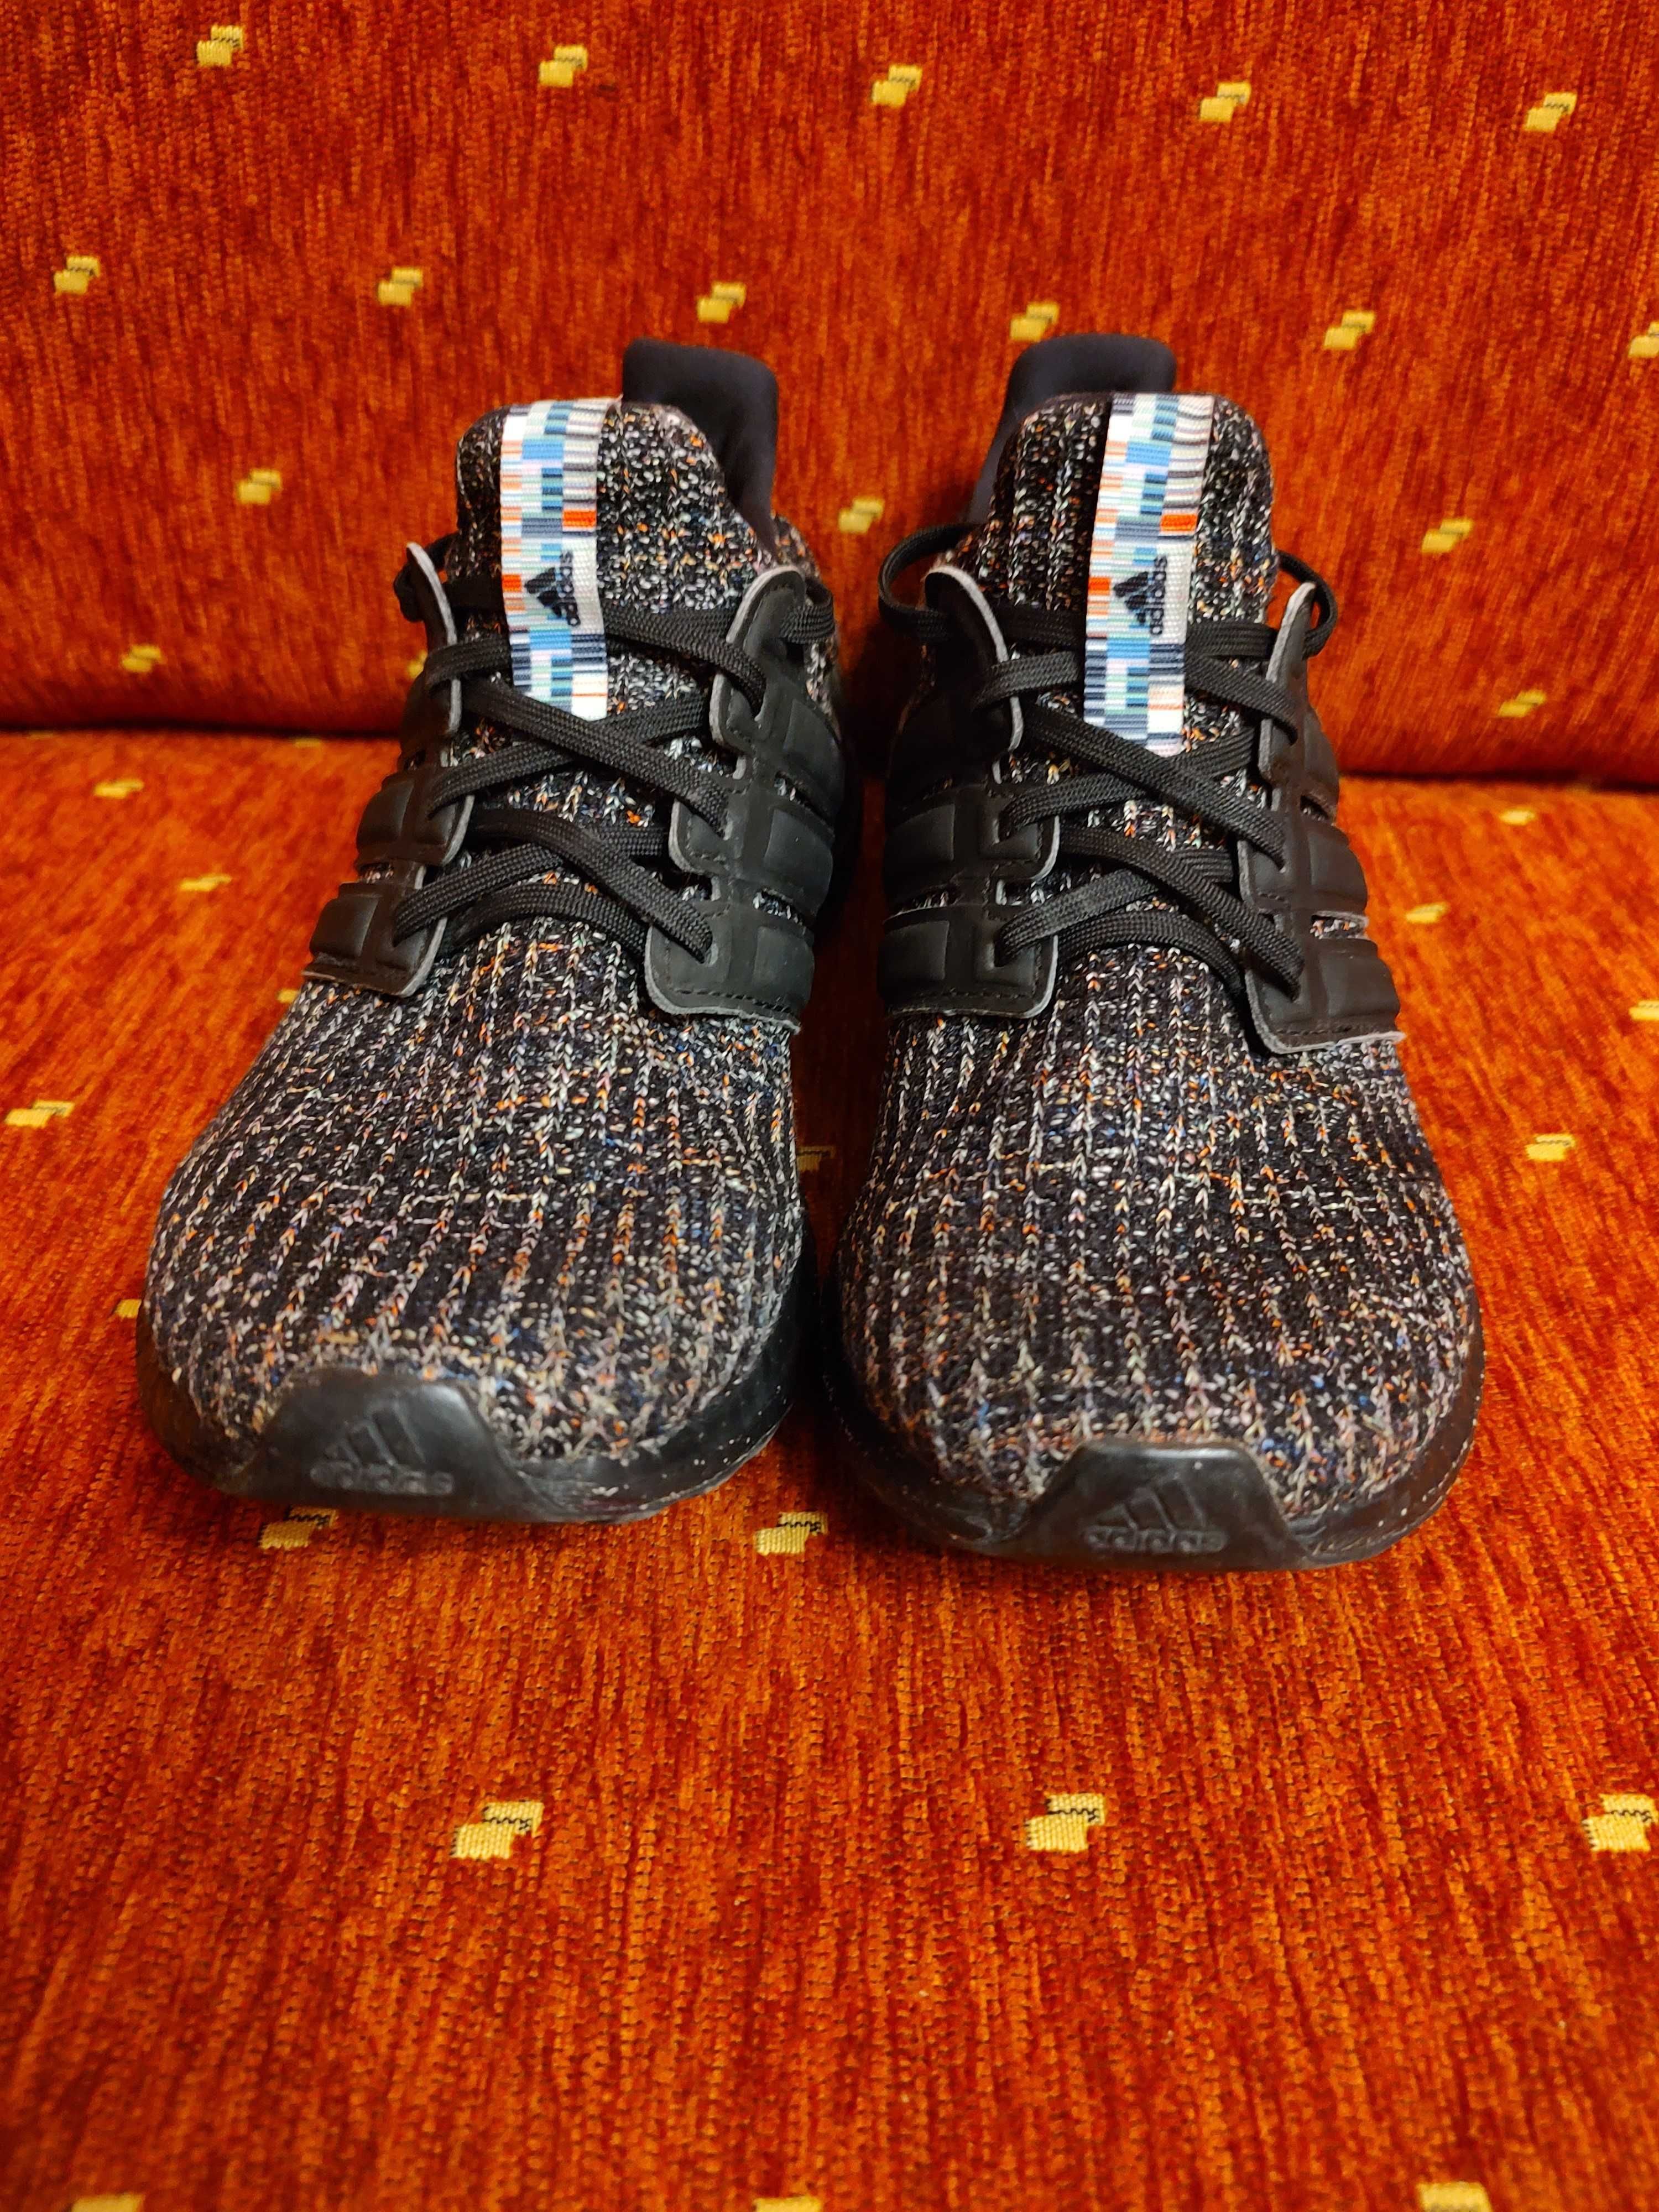 Adidas - Ultraboost-мъжки маратонки №41